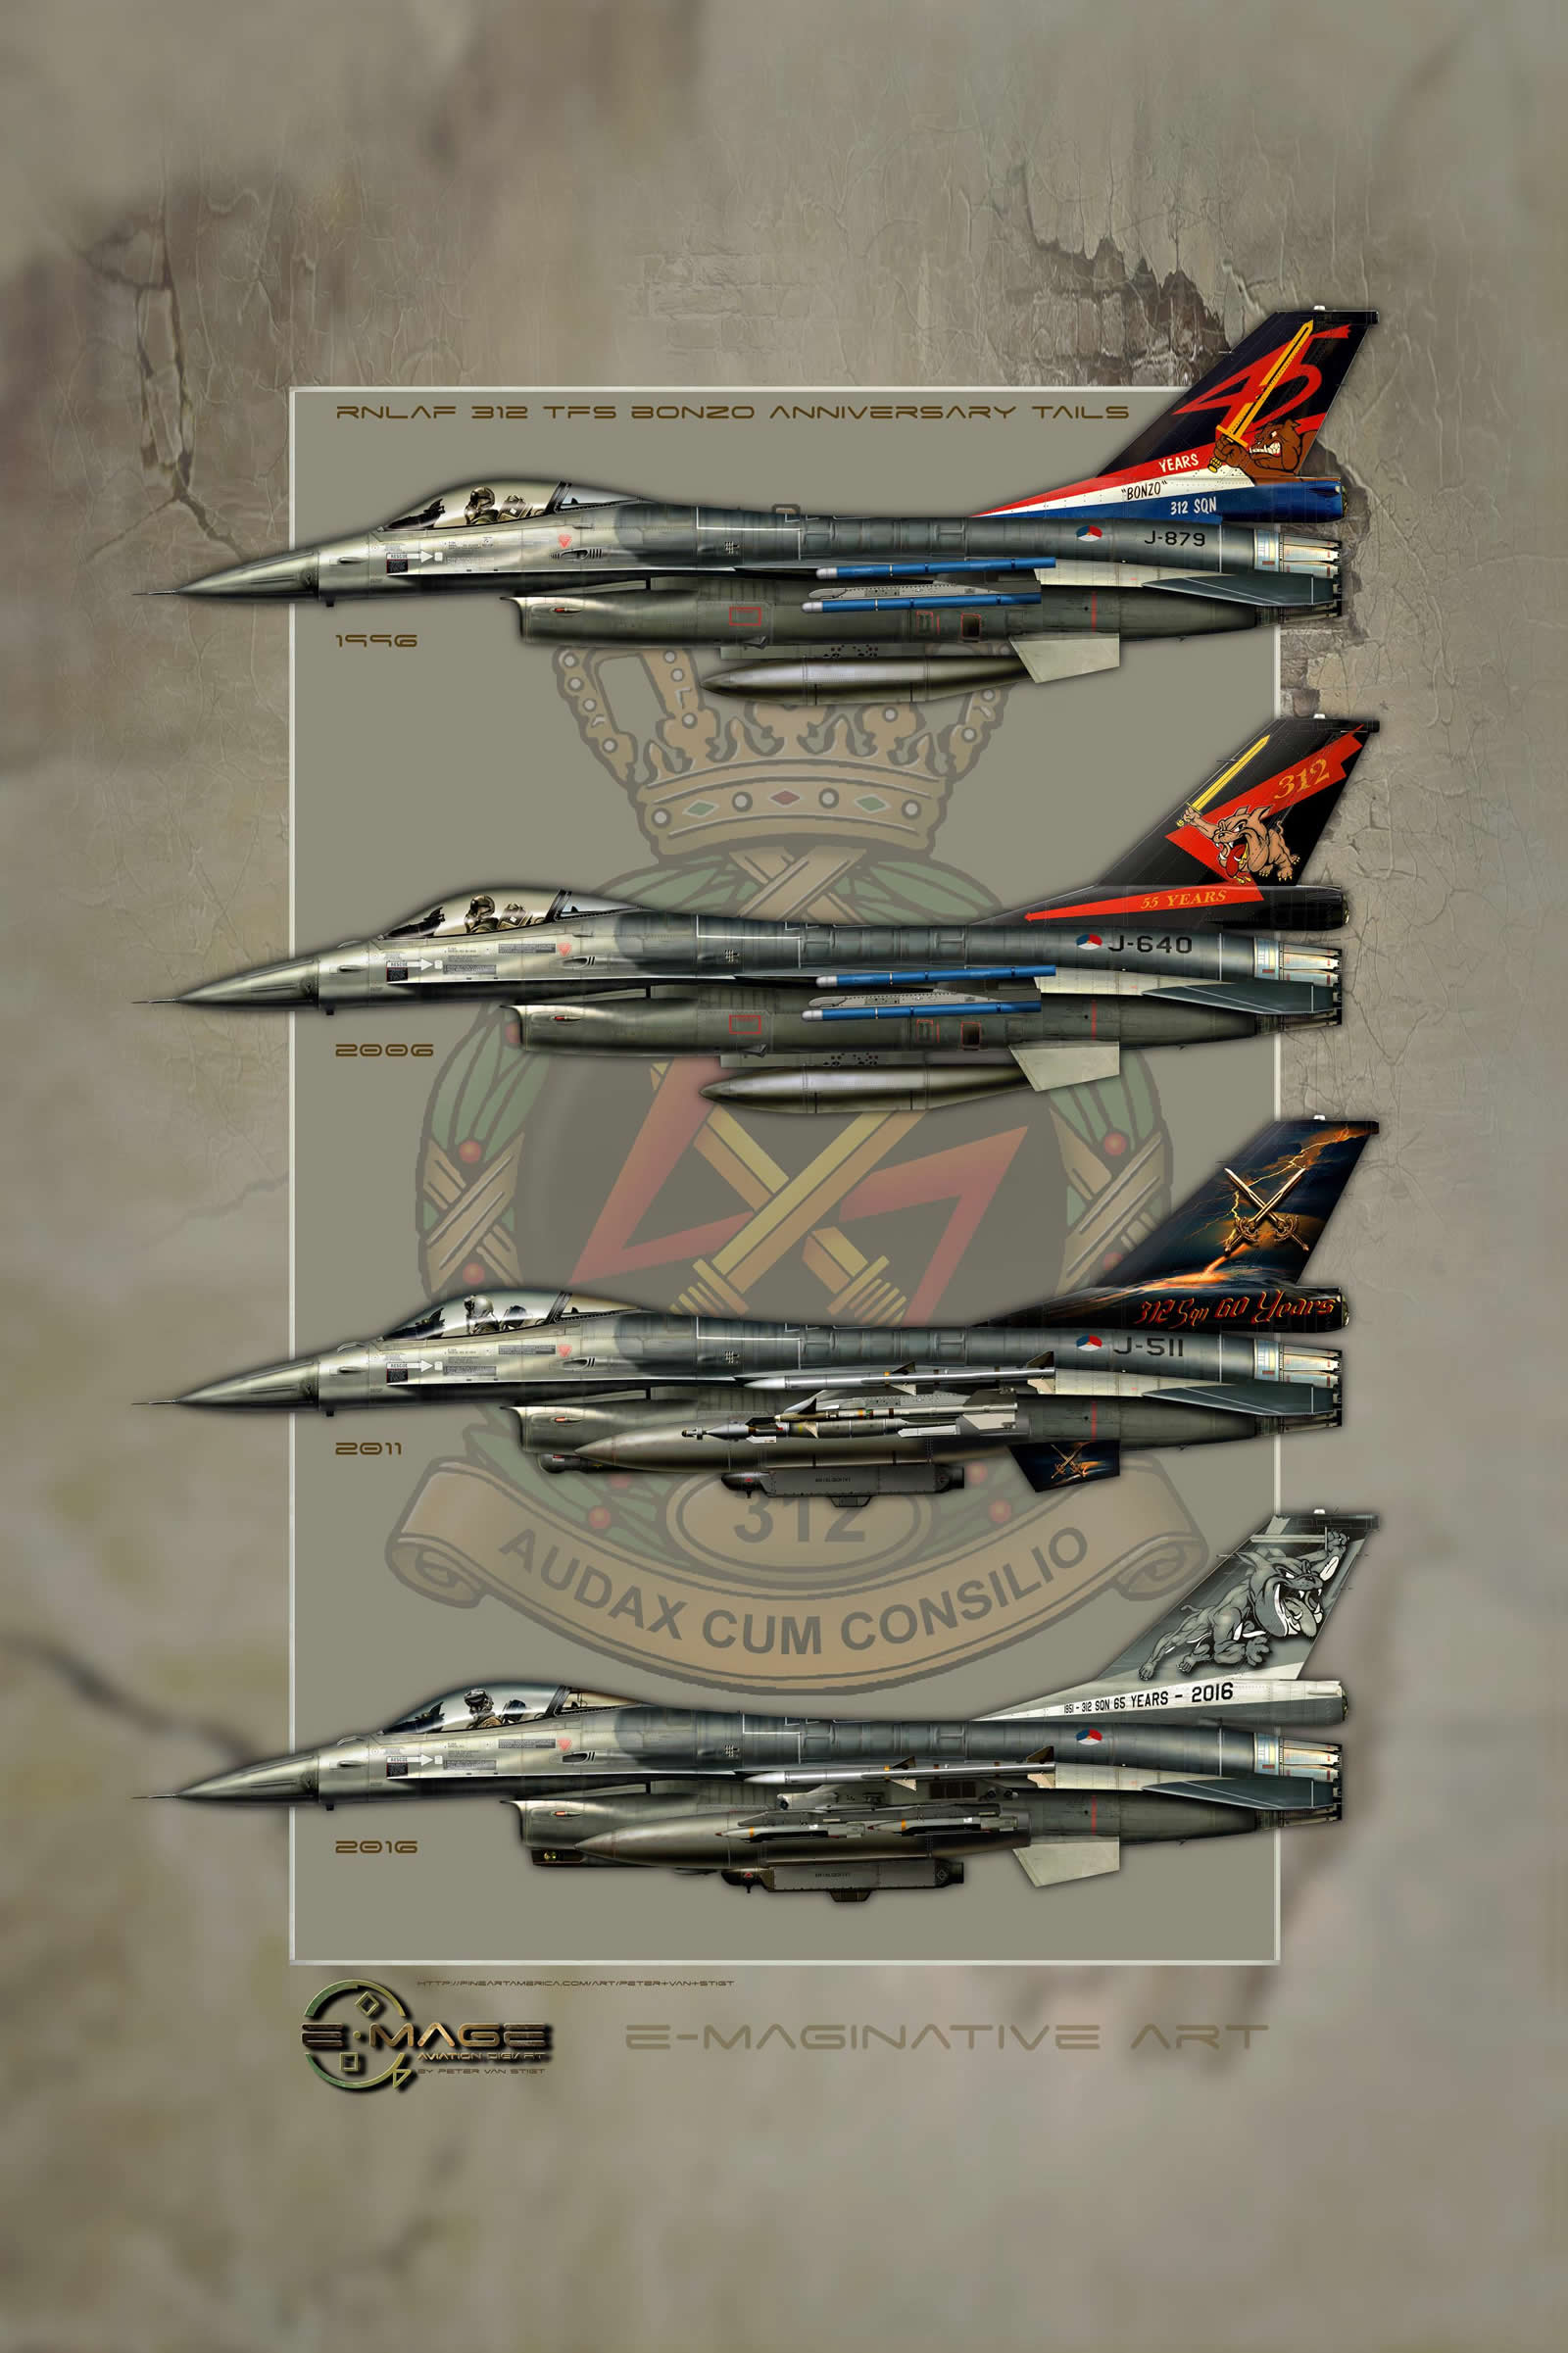 Real Dutch F-16 Tails by Peter van Stigt J-879, J-640, J-511, J-001